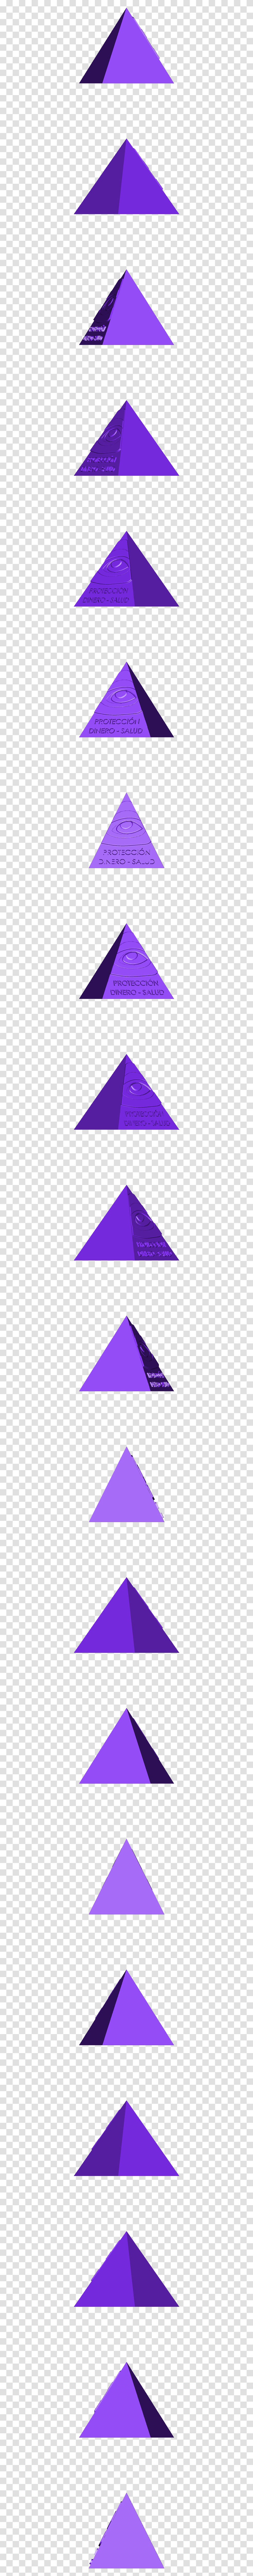 Triangle, Purple, Metropolis, City Transparent Png